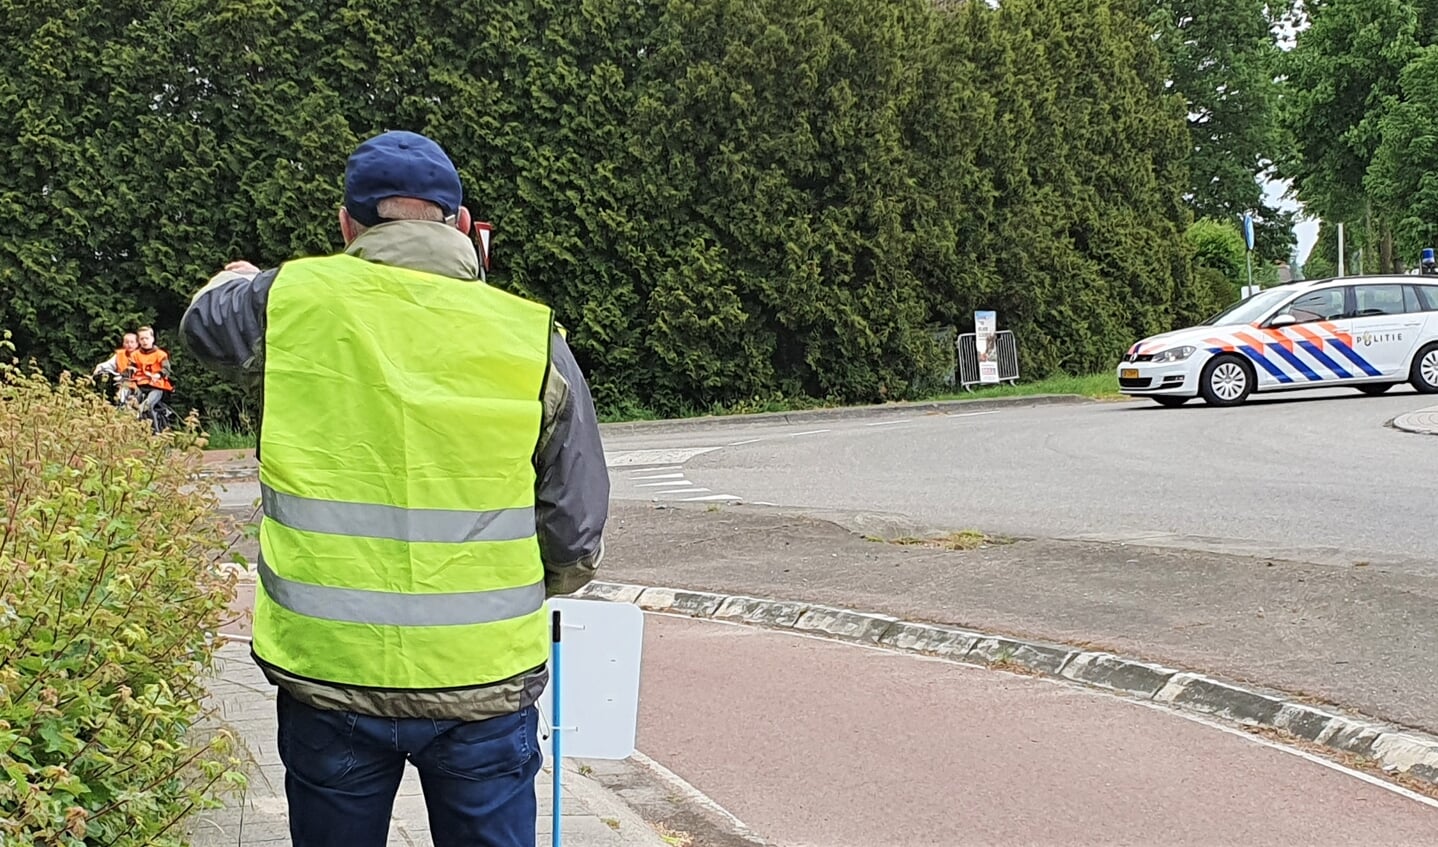 Deelnemers aan het praktisch verkeersexamen krijgen aanwijzingen van een controleur op de route. De politie surveilleert op de route gedurende het examen. Foto: Alice Rouwhorst